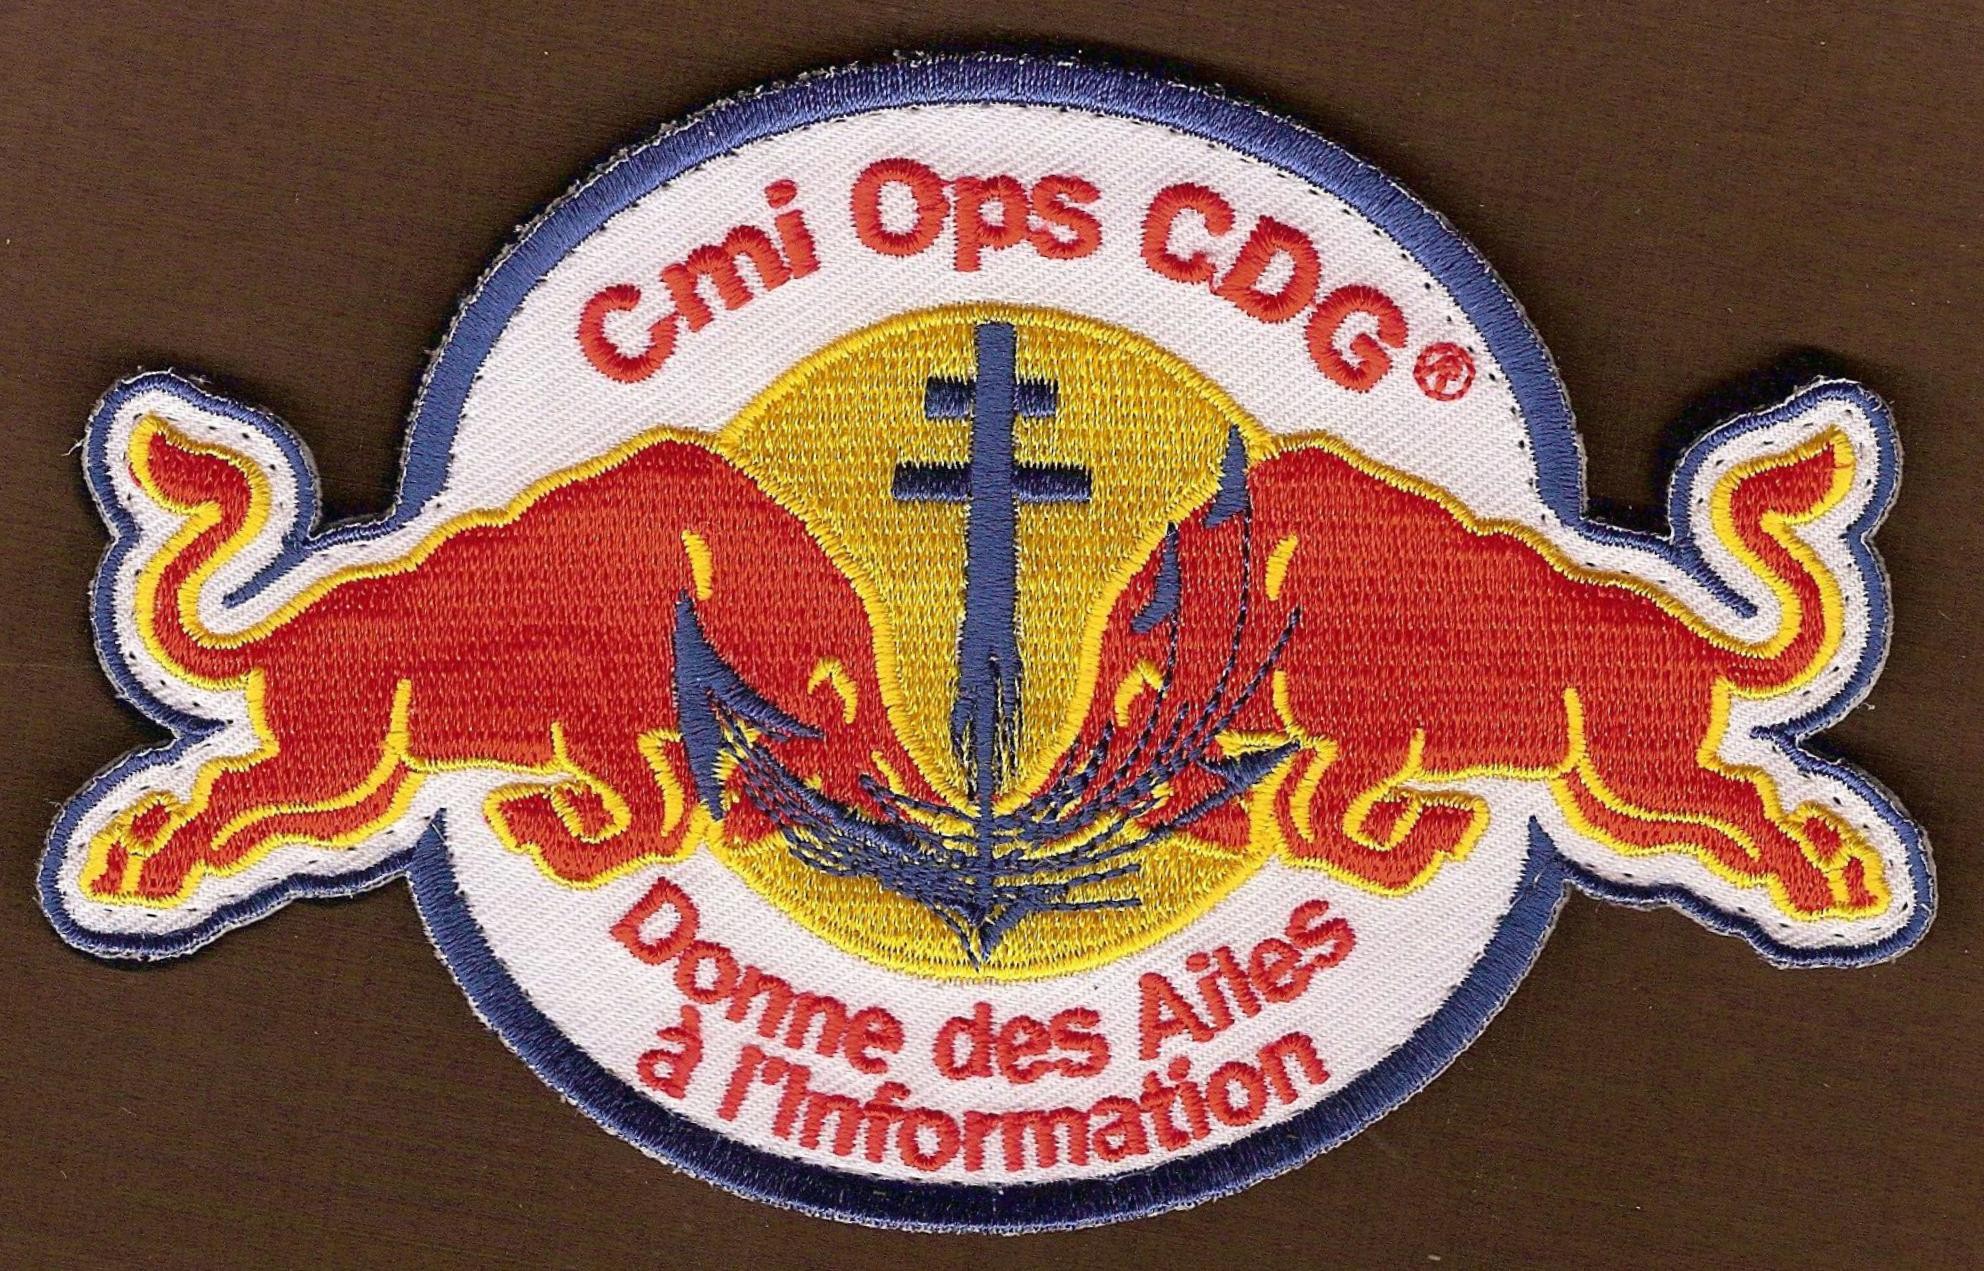 PA Charles de Gaulle - Cmi Ops - Donne des ailes à l'information